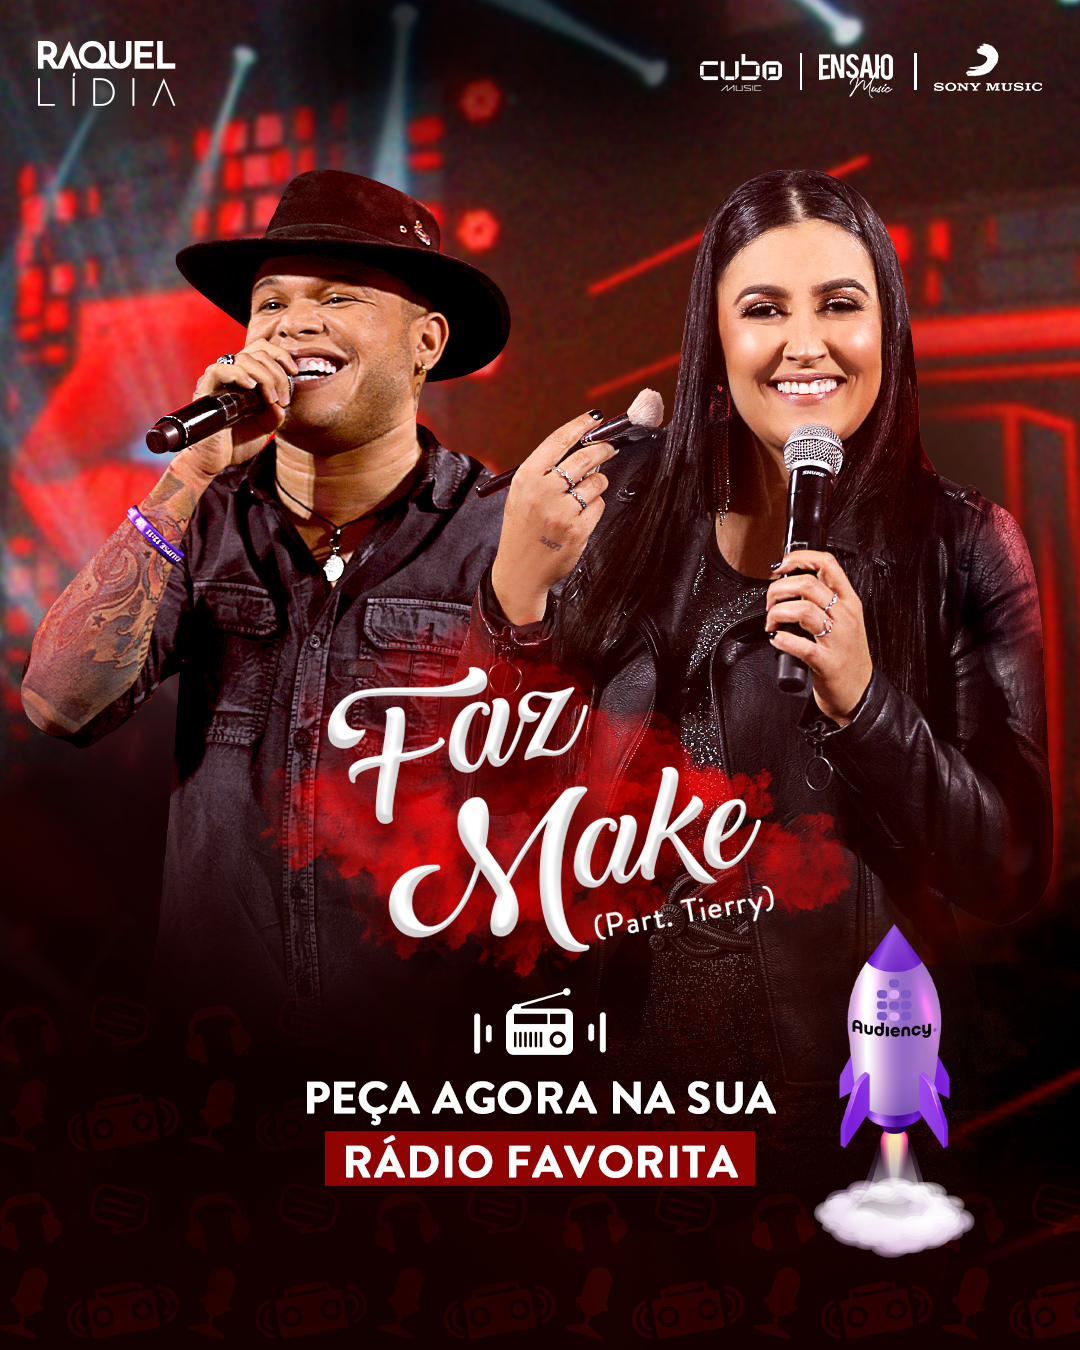 Raquel Lívia e Tierry, "Faz Make" lançamento musical audiency